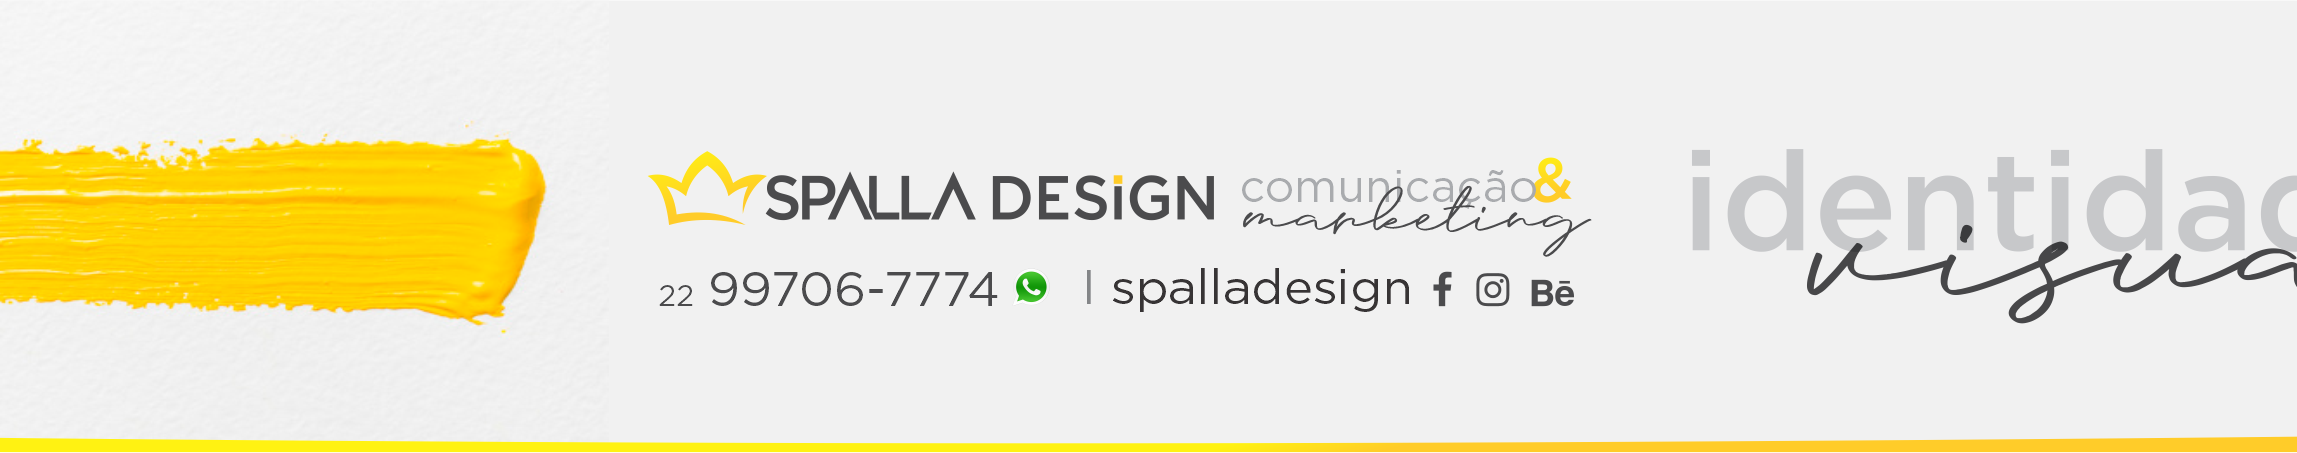 Spalla Design's profile banner